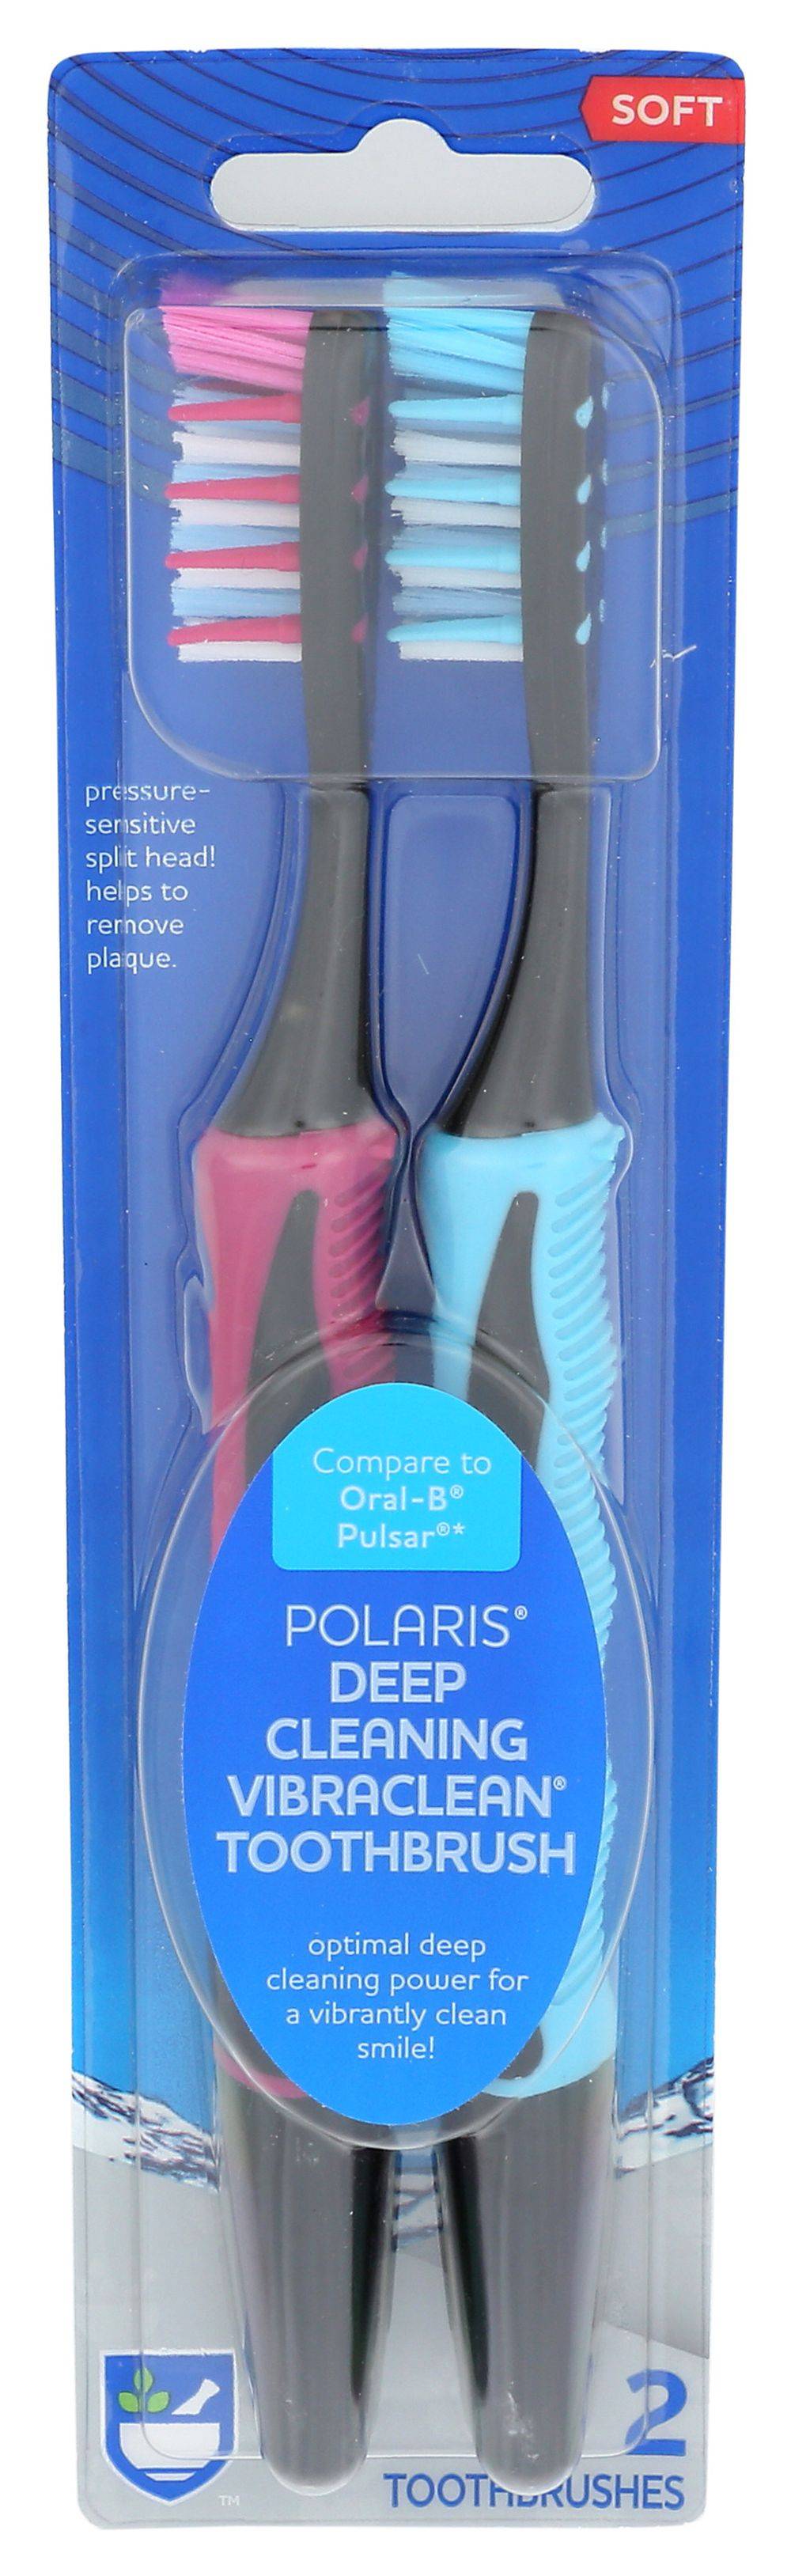 Rite Aid Oral Care Polaris Toothbrush (2 ct)